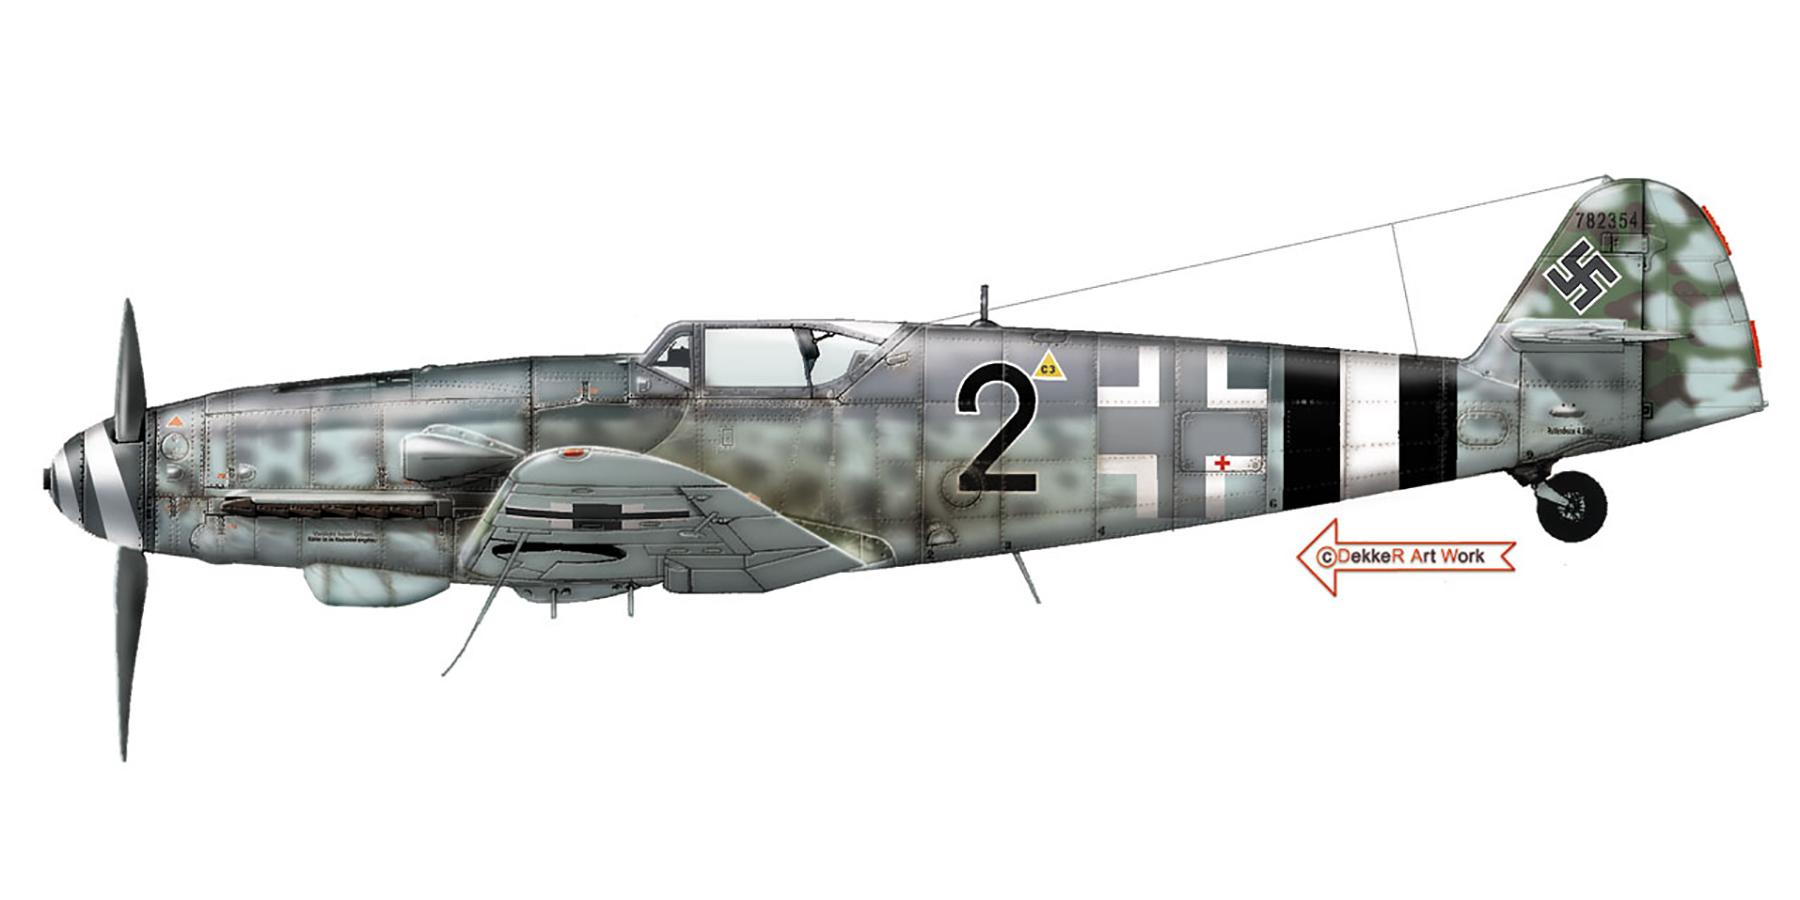 Messerschmitt Bf 109G14AS Erla 14.JG4 Black 2 Ernst Scheufele WNr 782354 sd flak 3rd Dec 1944 0A